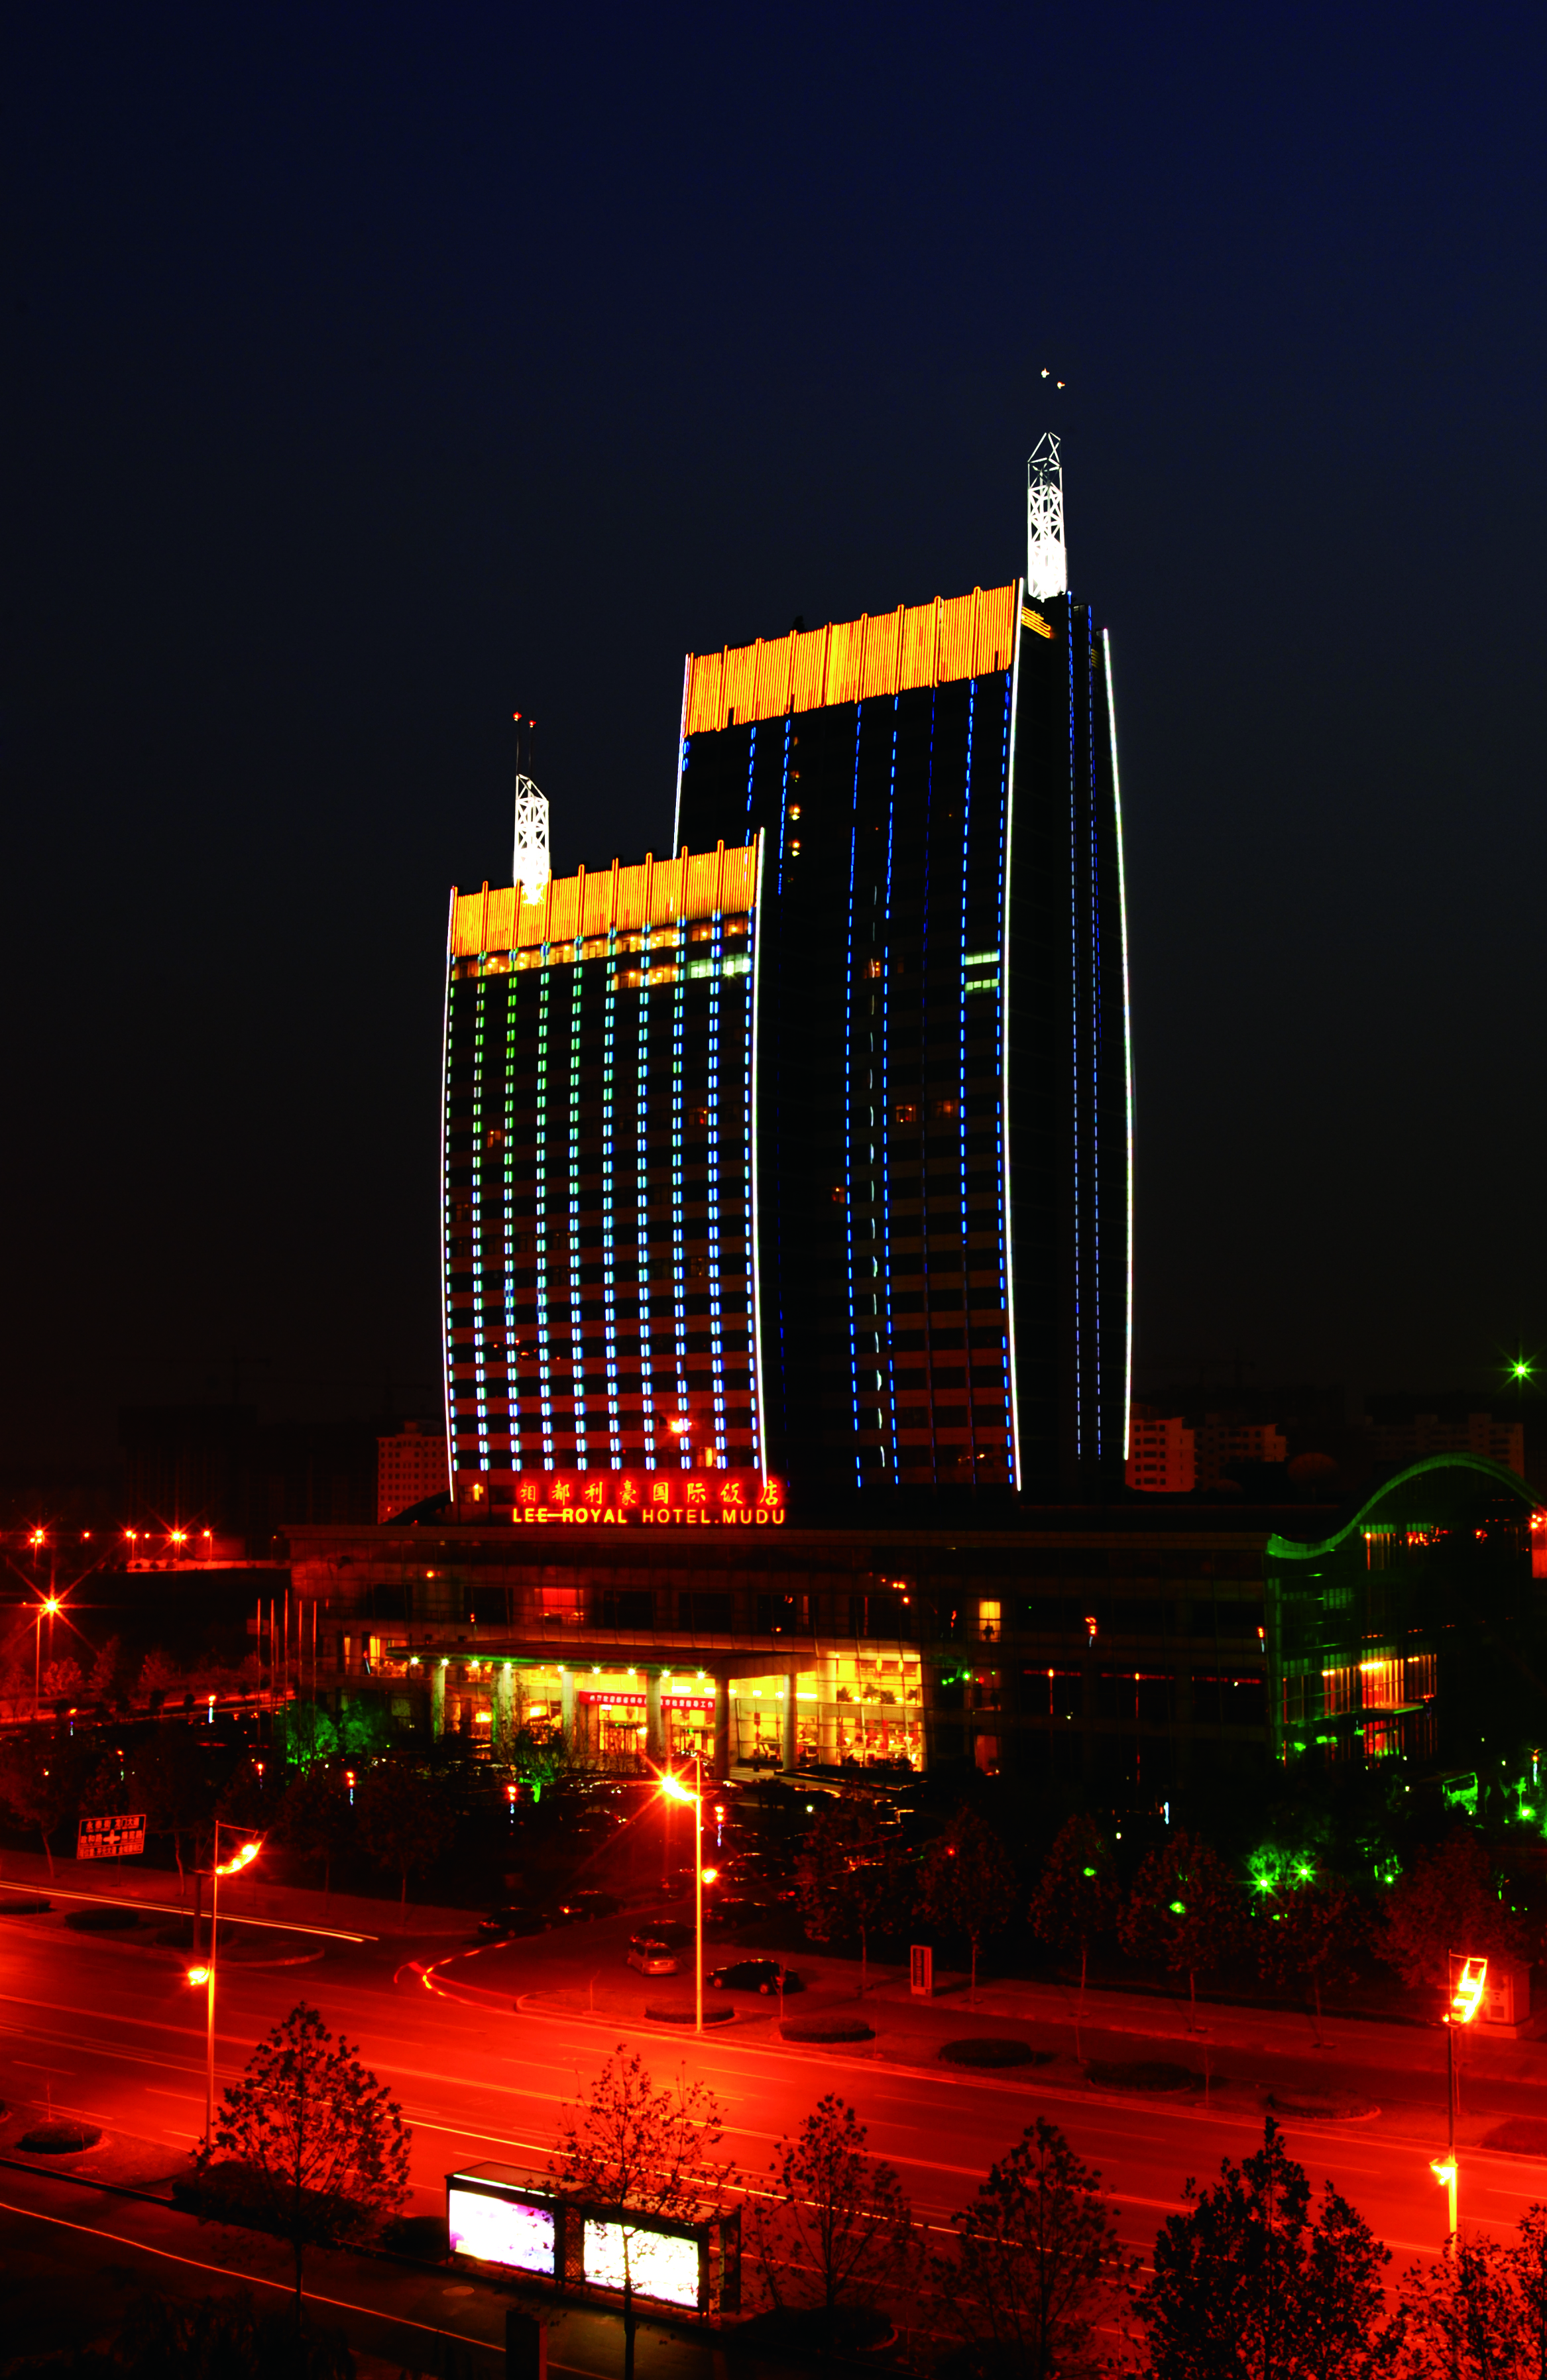 钼都利豪国际饭店是洛阳市五星级商务饭店,位于洛龙新区核心区域,紧邻